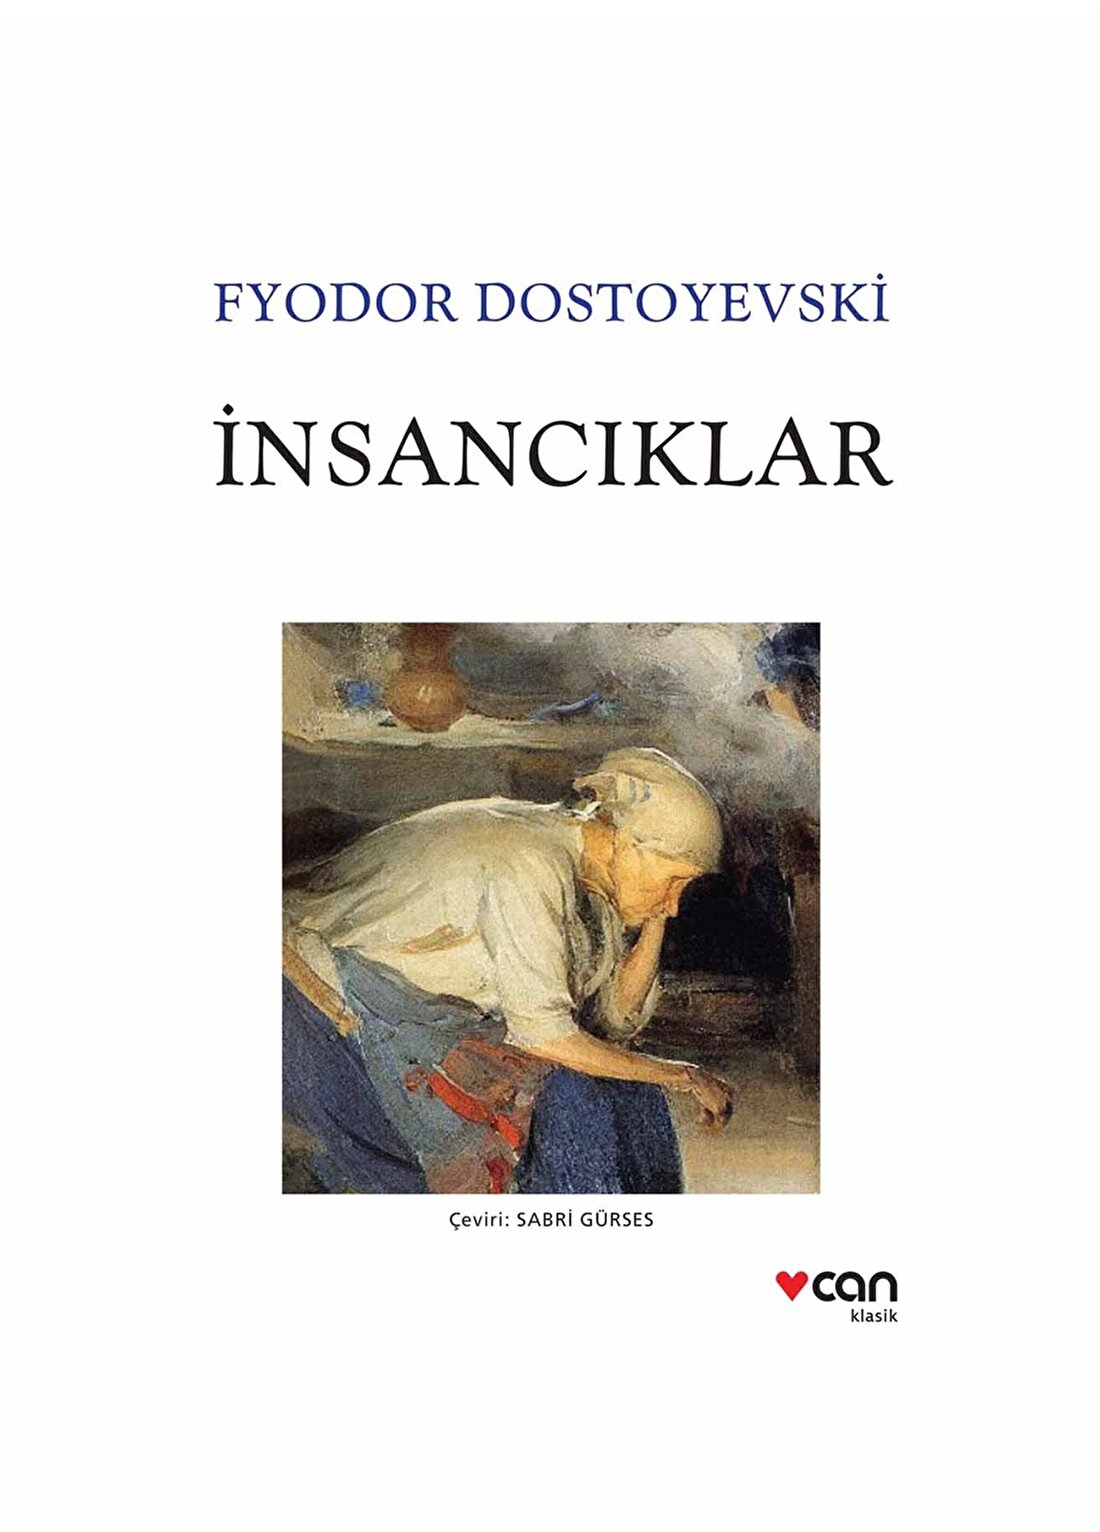 Can Yayınları - İnsancıklar - Fyodor Dostoyevski